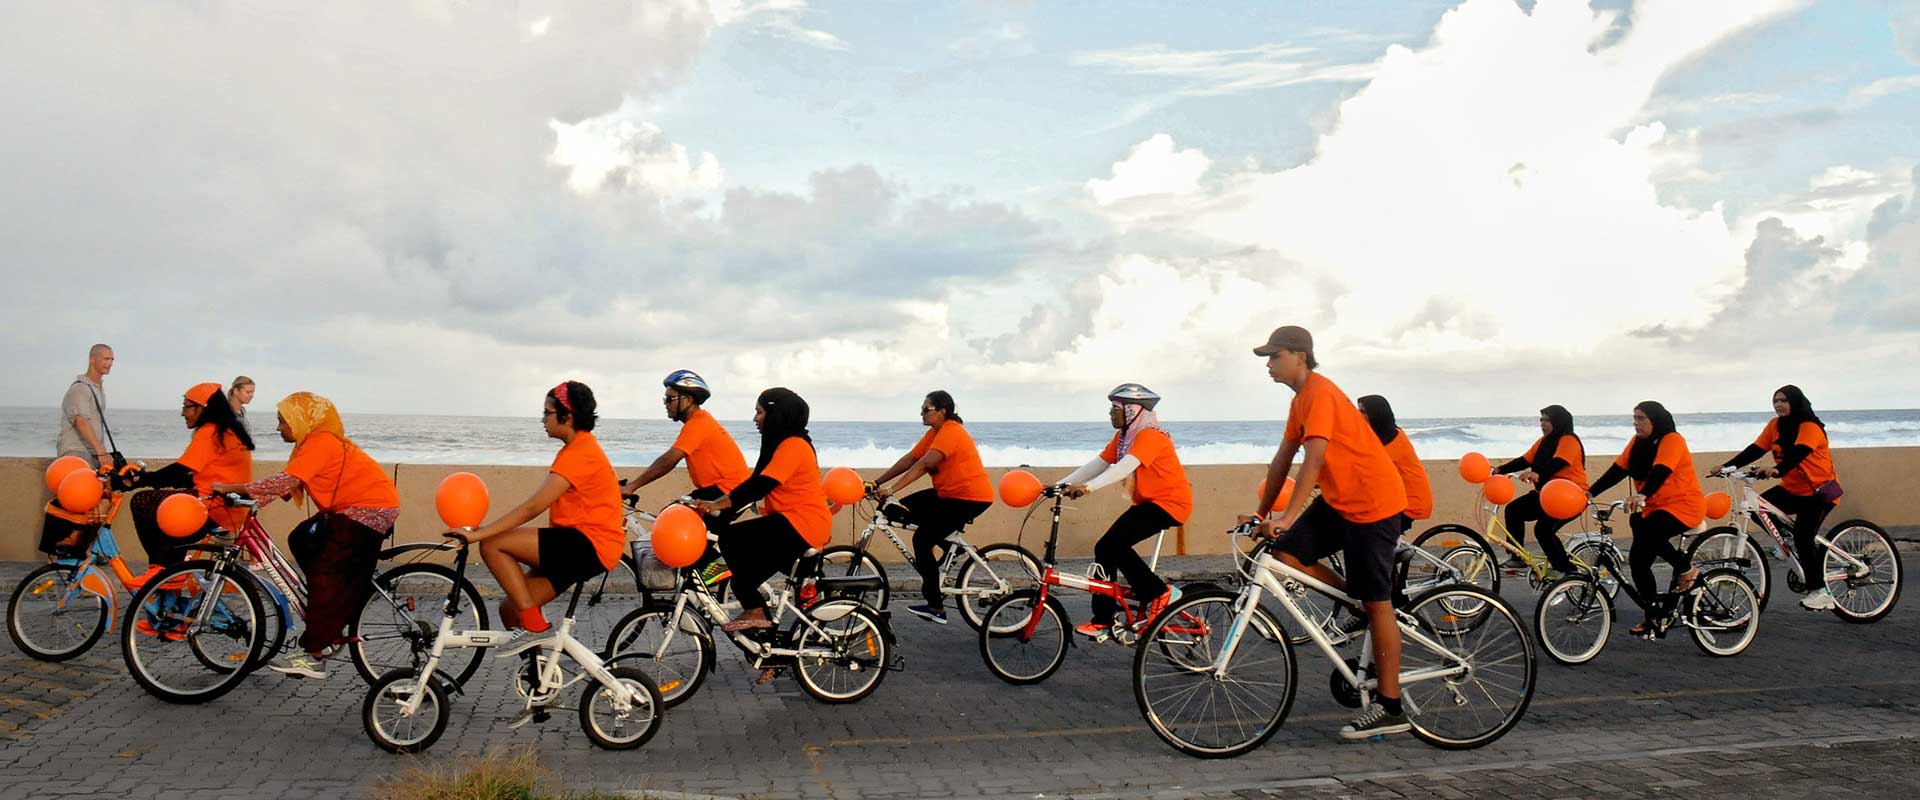 Rallye cycliste aux Maldives pour célébrer les 16 Jours d'activisme pour mettre fin à la violence contre les femmes et les filles. Photo : UN RCO Maldives/Lara L. Hill